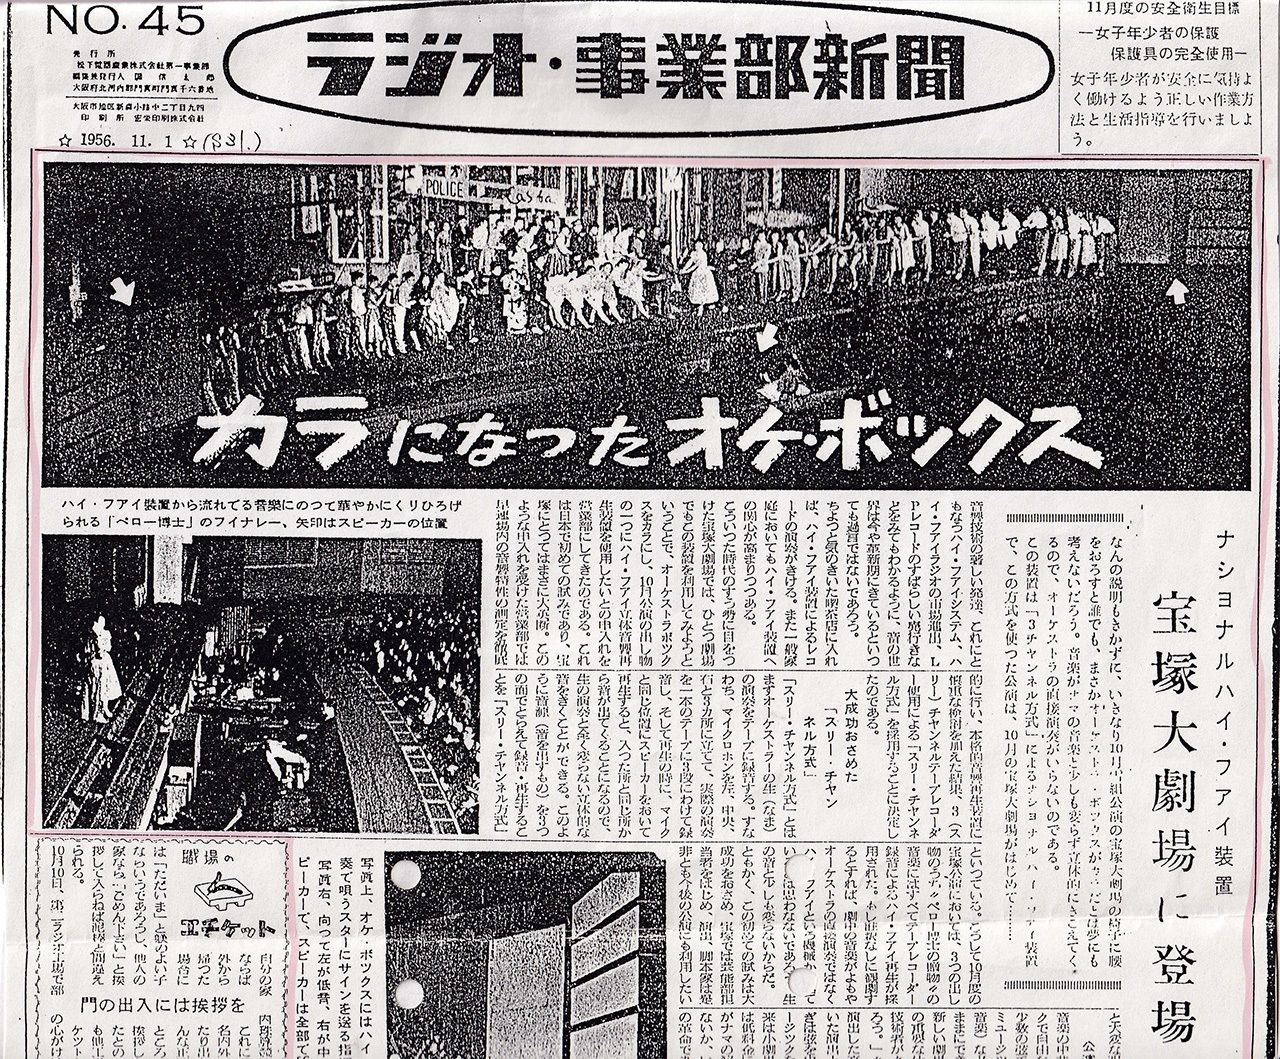 Статья об использовании Takarazuka Revue оборудования Matsushita для замены отсутствующего оркестра, опубликованная в журнале Rajio-Jigyōbu Shinbun ( 1 ноября 1956 г.) (предоставлено Маэкавой Ёитиро)